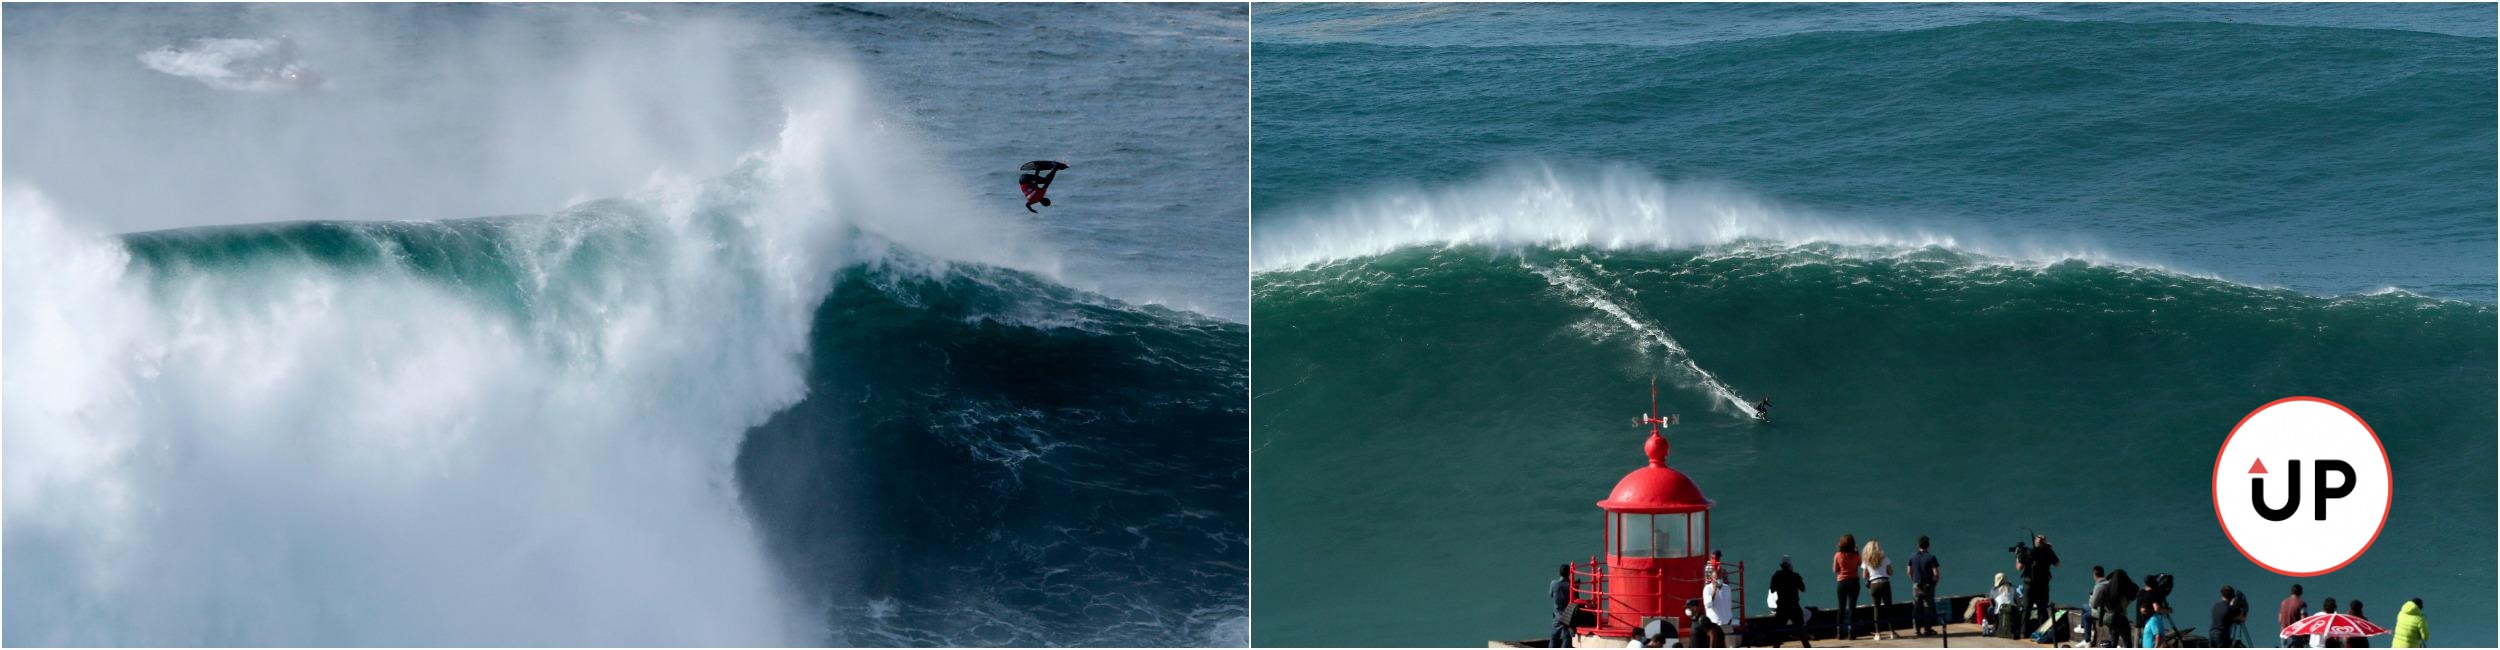 Nazaré, Portugalsko, big wave surfing, 2020